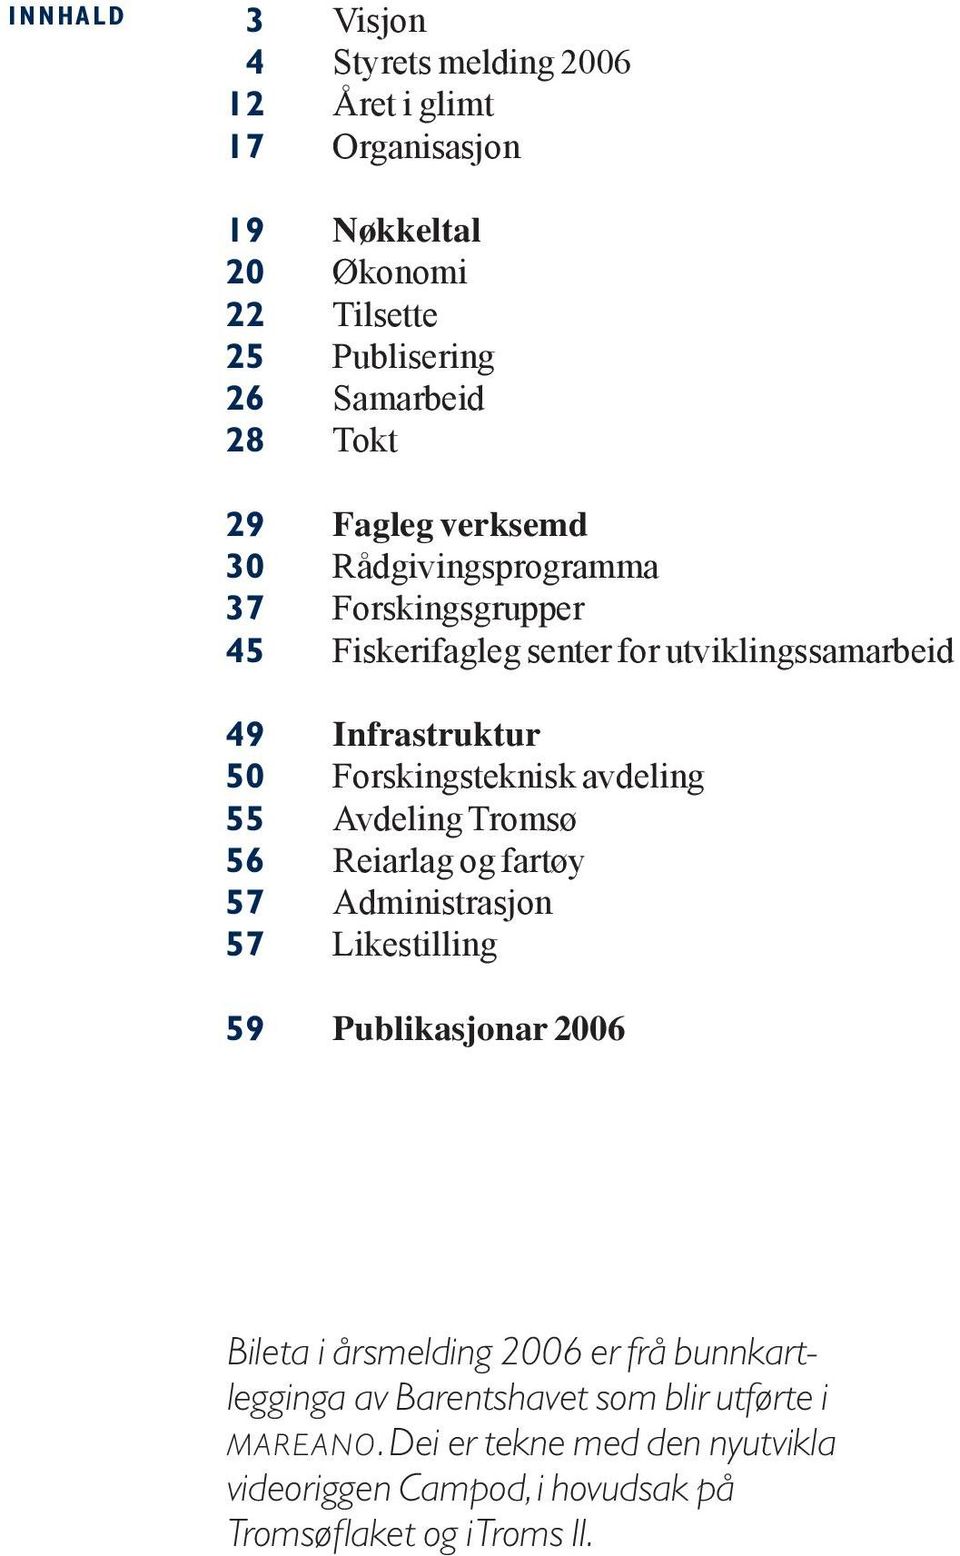 Forskingsteknisk avdeling 55 Avdeling Tromsø 56 Reiarlag og fartøy 57 Administrasjon 57 Likestilling 59 Publikasjonar 2006 Bileta i årsmelding